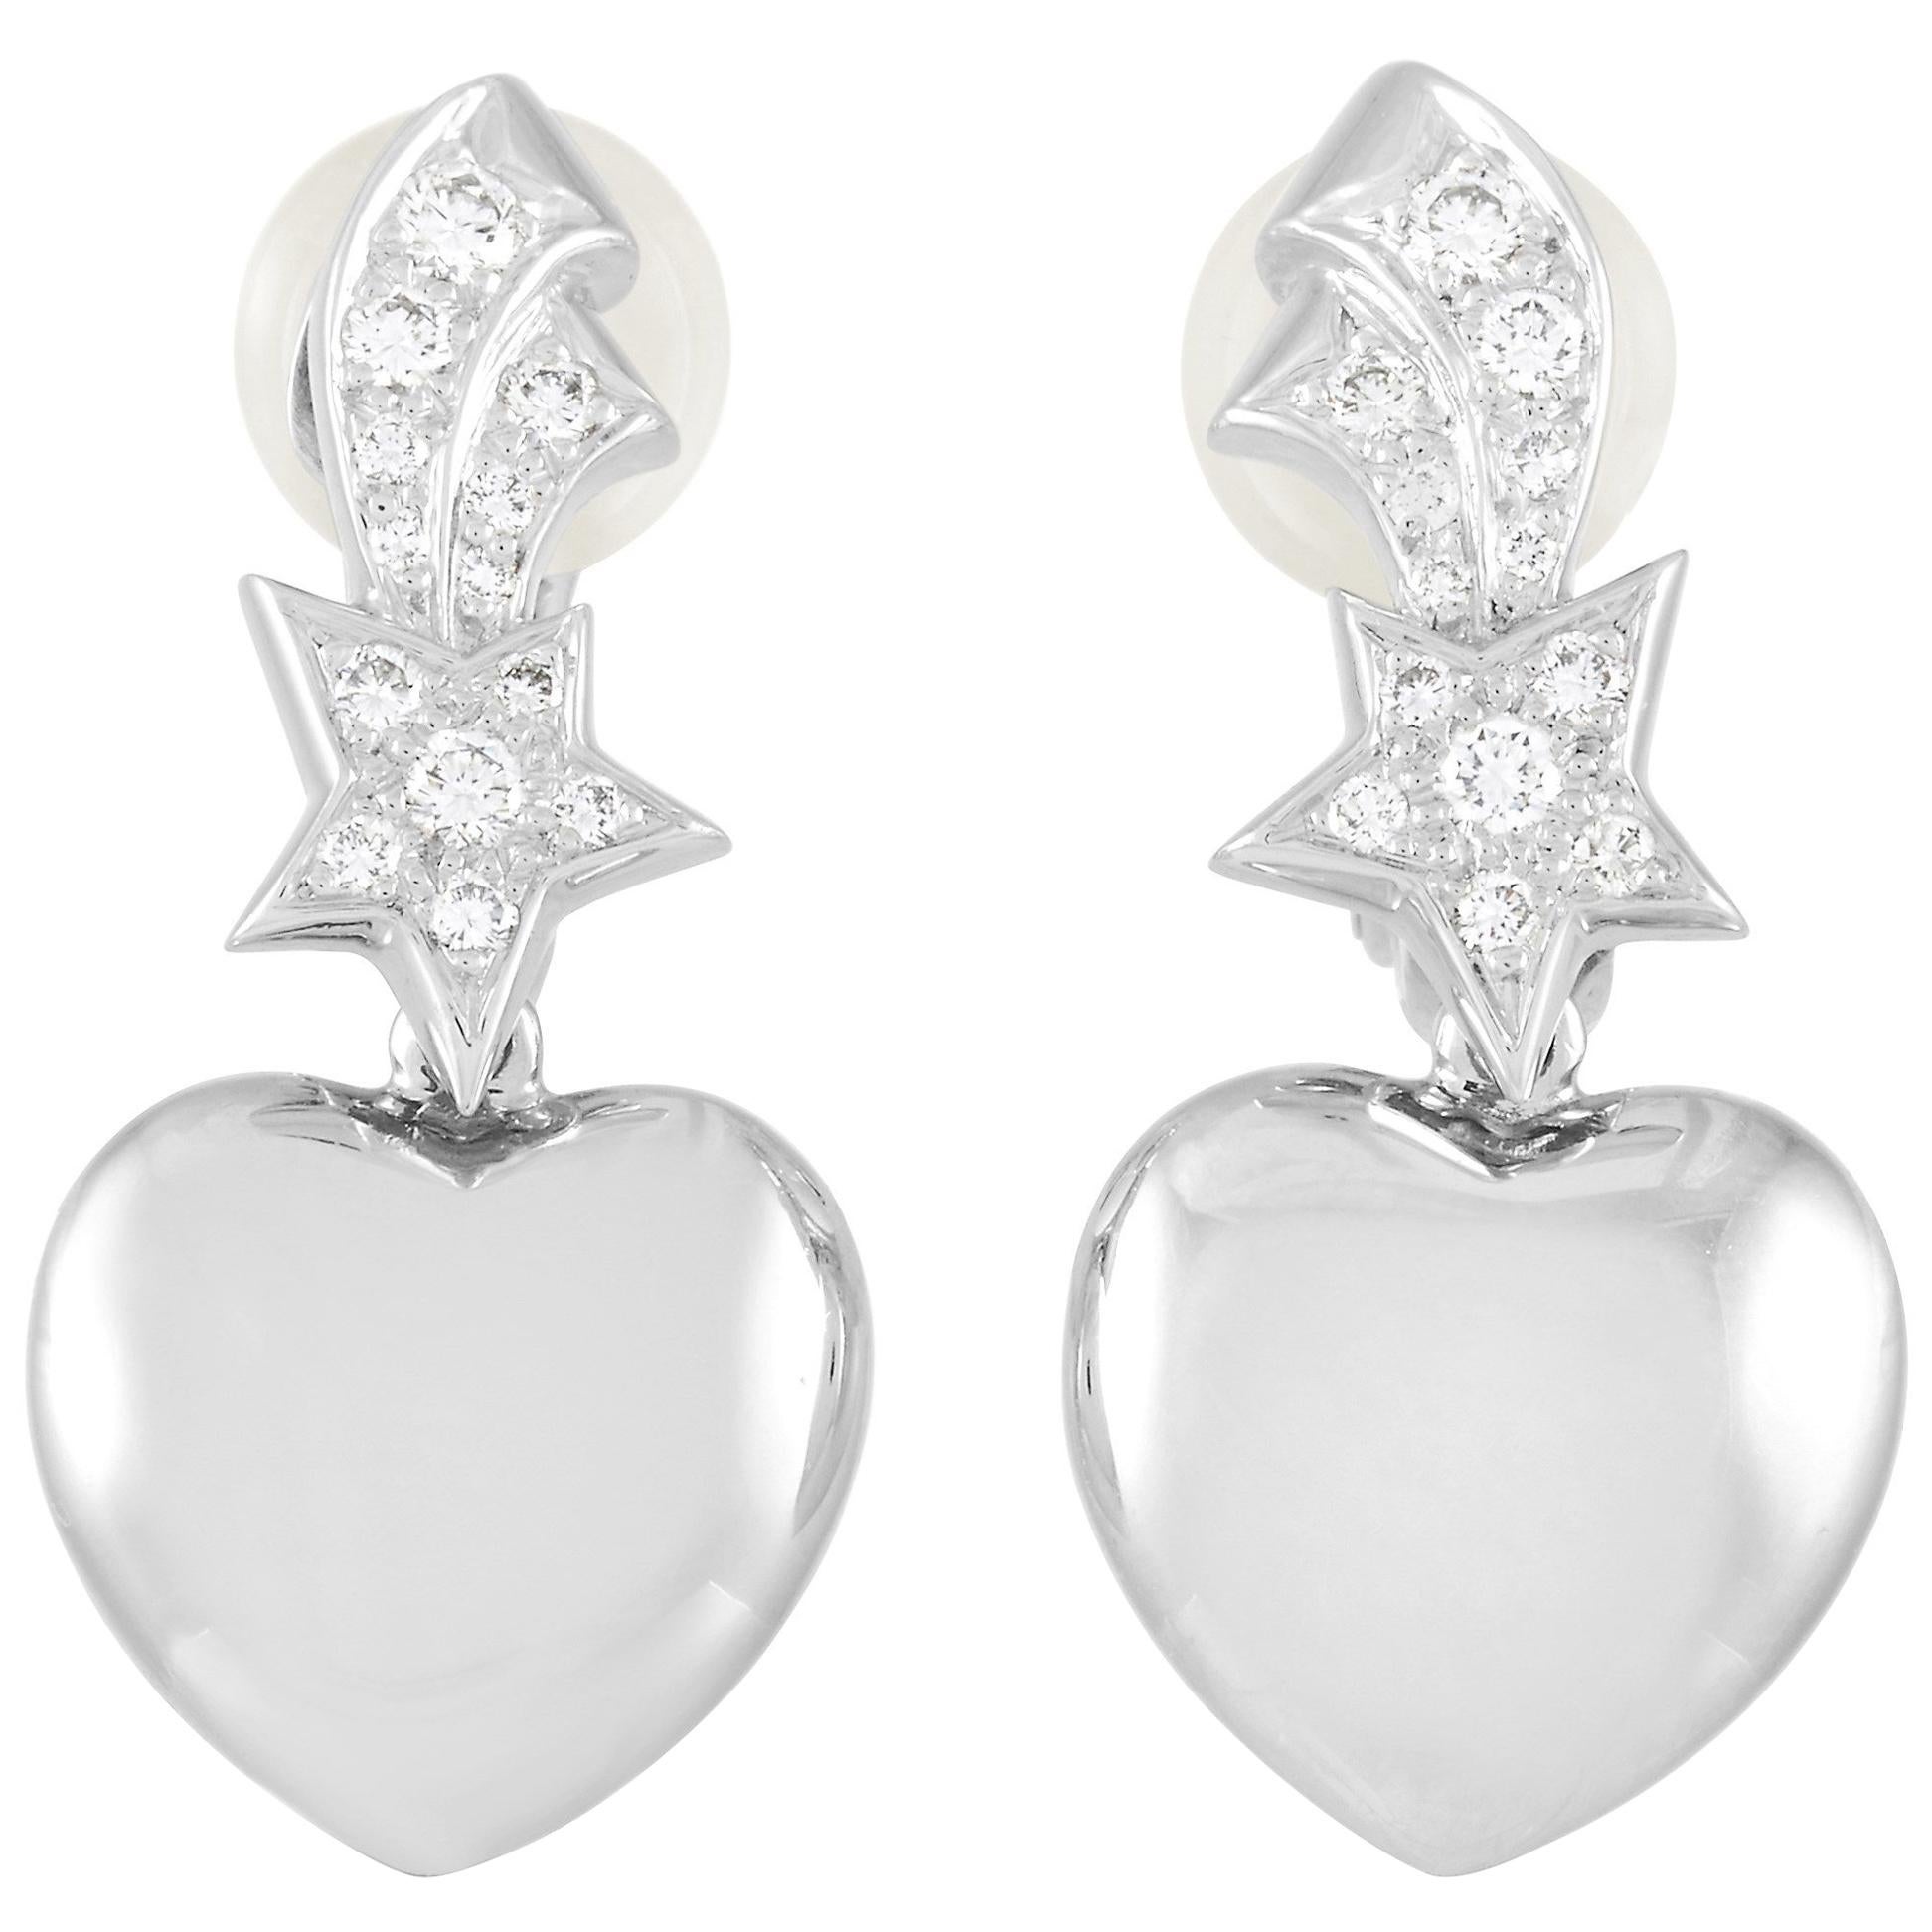 pearl drop chanel earrings gold